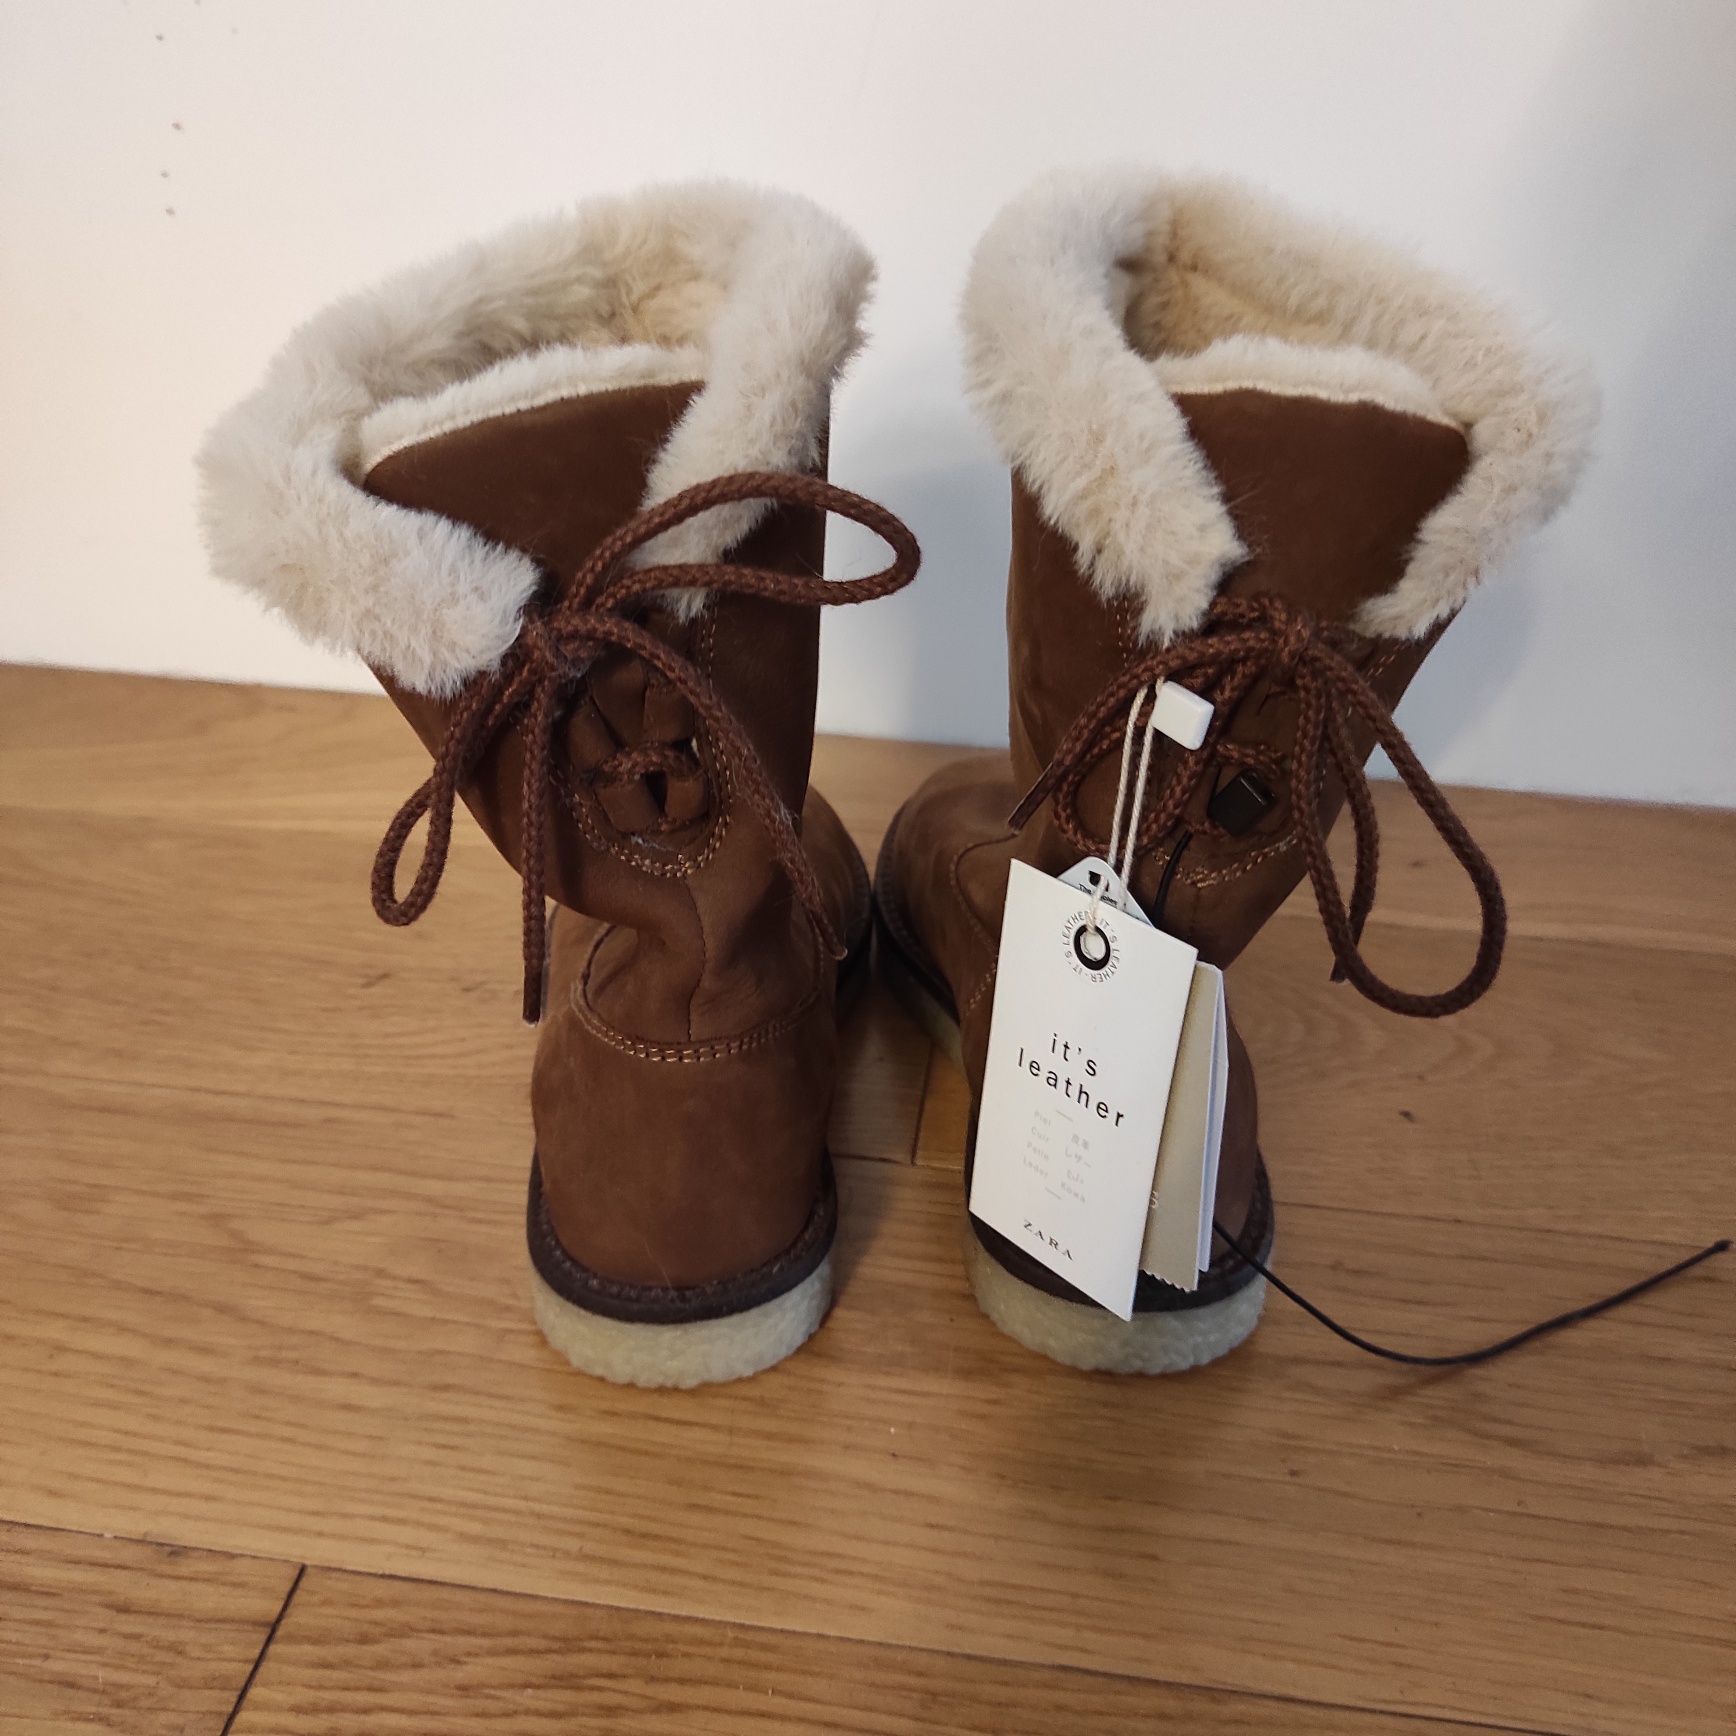 28 NOWE Zara buty buciki kozaki śniegowce na zimę skórzane z futrem fu